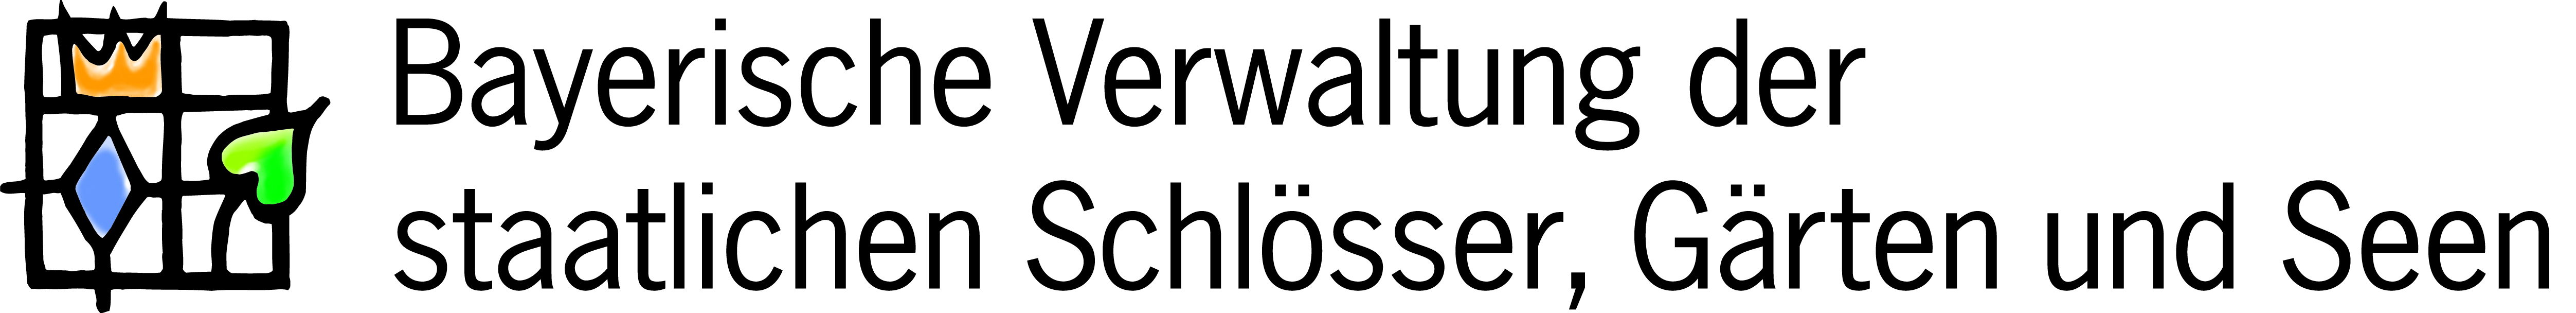 Logo:Bayerische Veraltung der Staatlichen Schlösser, Gärten und Seen 